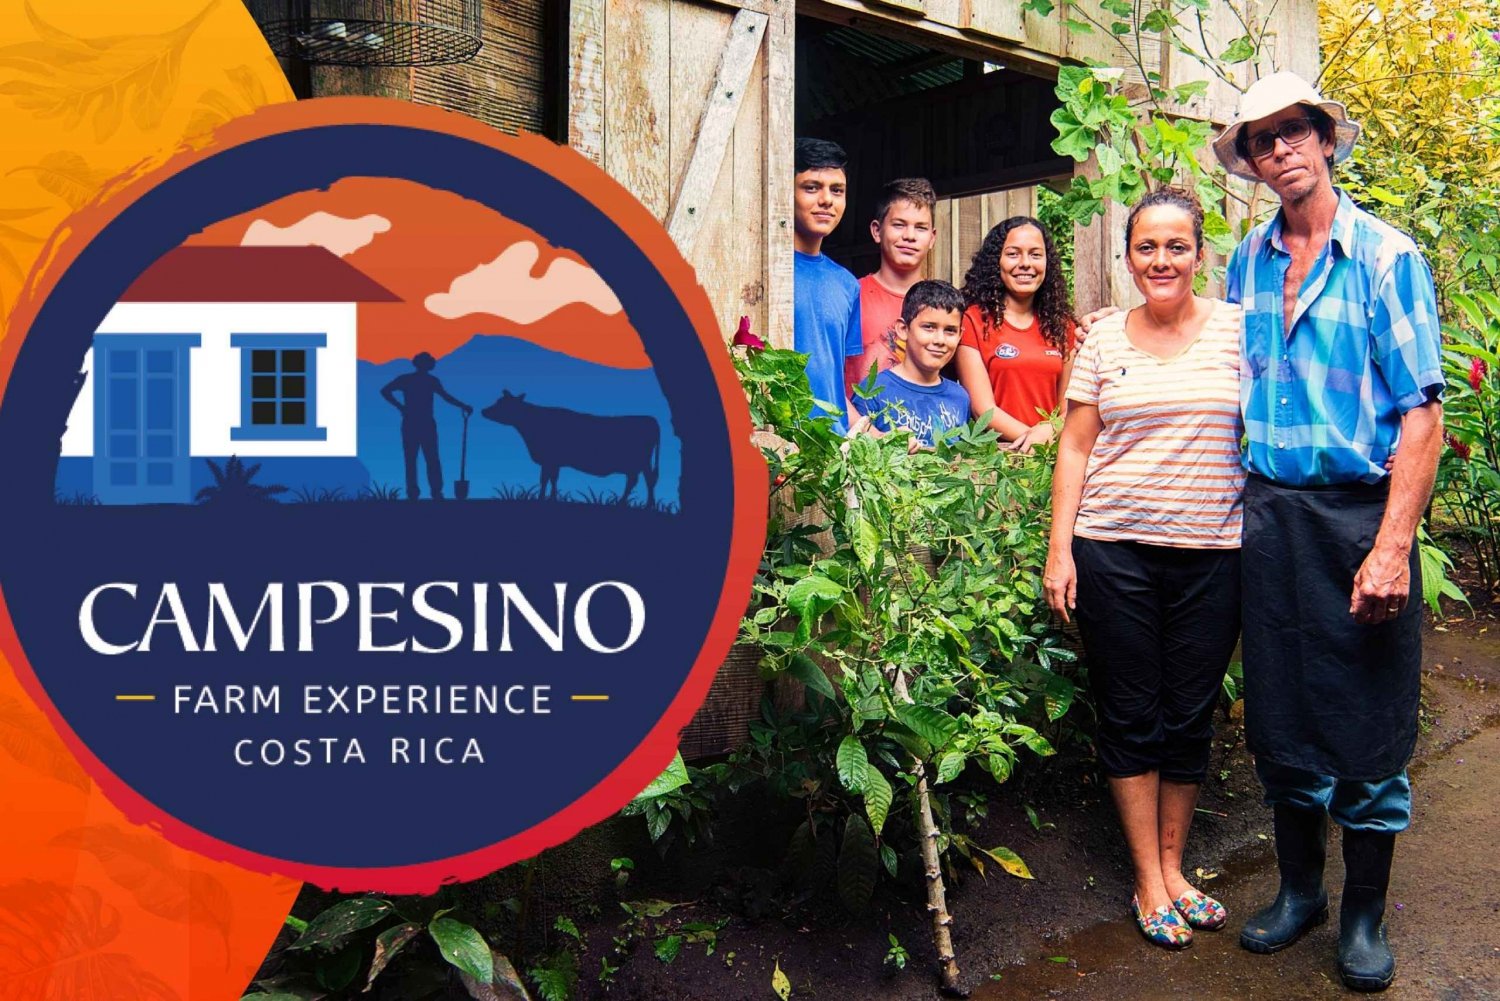 La Fortuna: Campesino Farm Experience: Pienryhmä: Puolipäiväinen Campesino Farm Experience